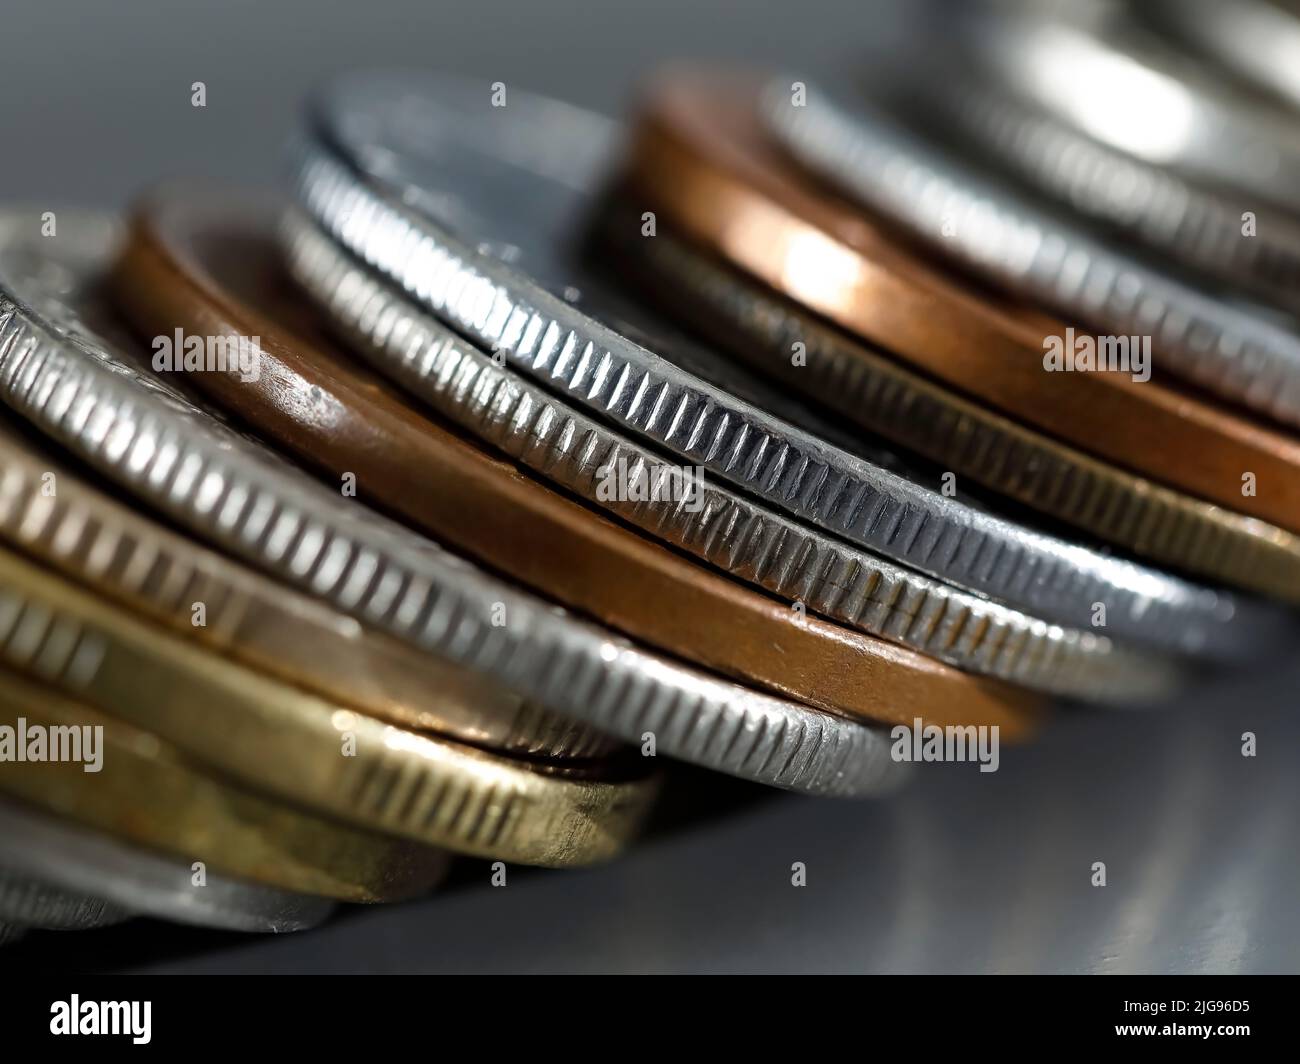 La imagen del dinero, en este caso las monedas, expresa cuestiones fiscales. Foto de stock